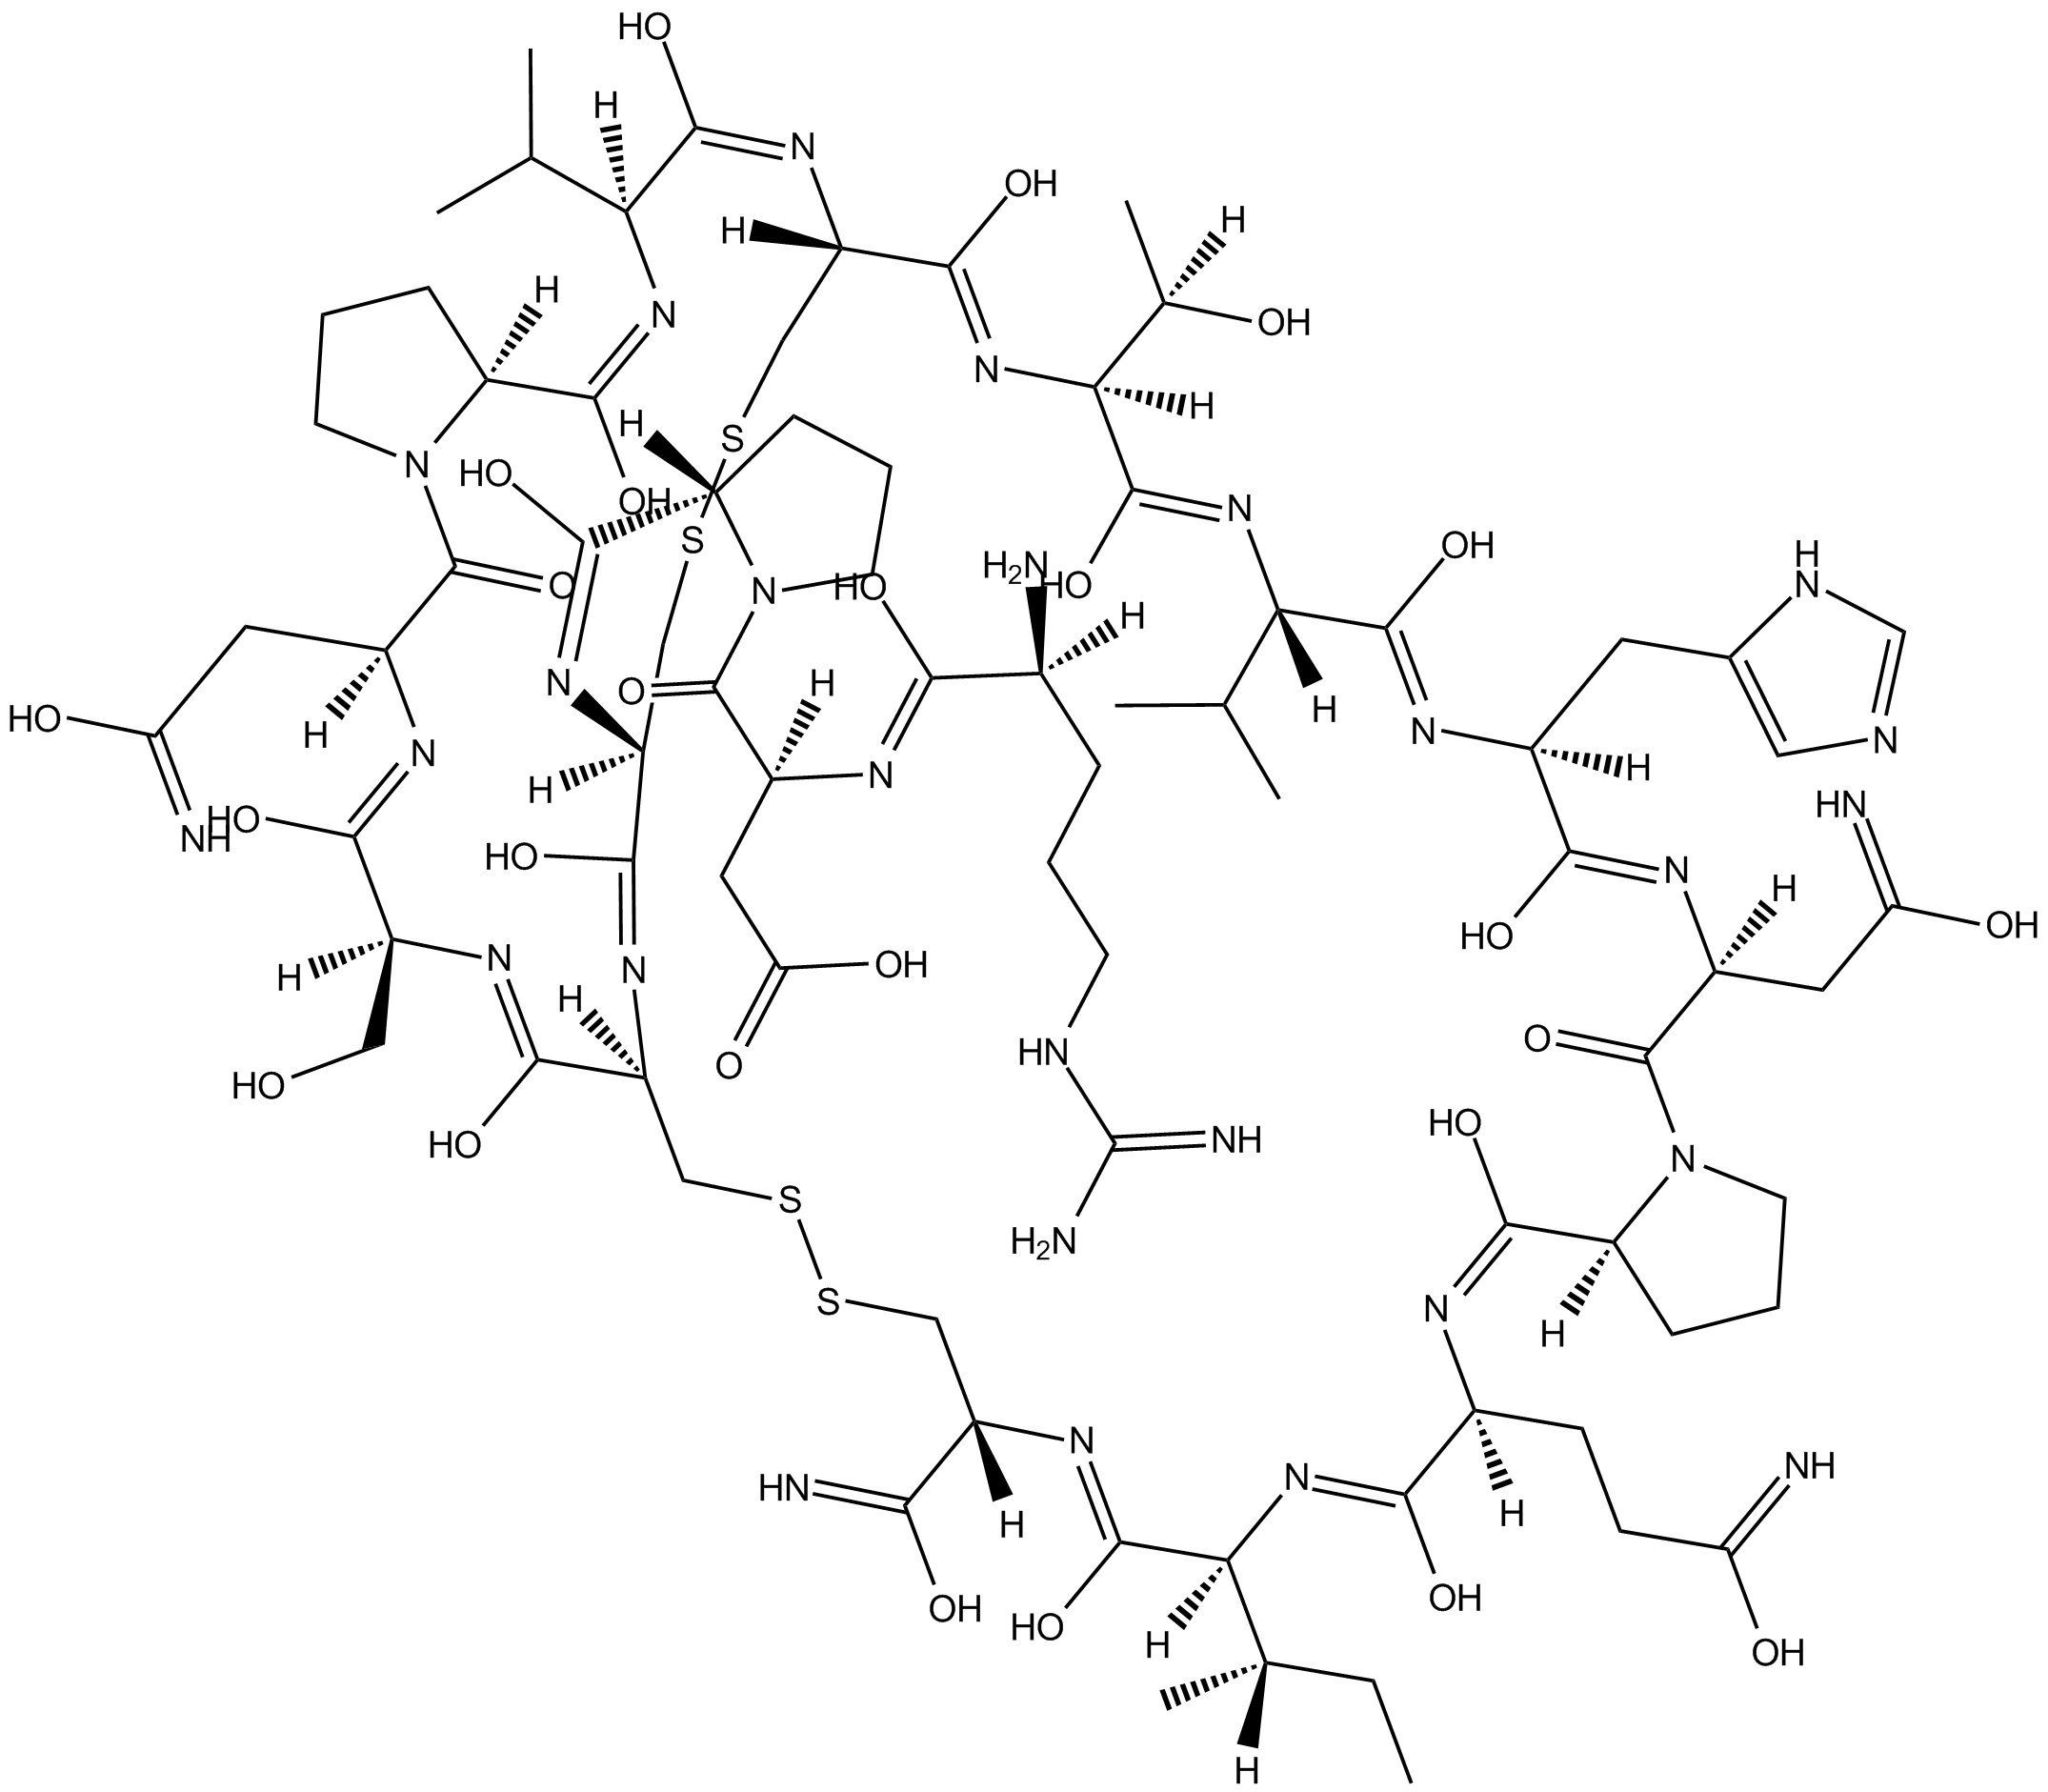 α-Conotoxin PIA